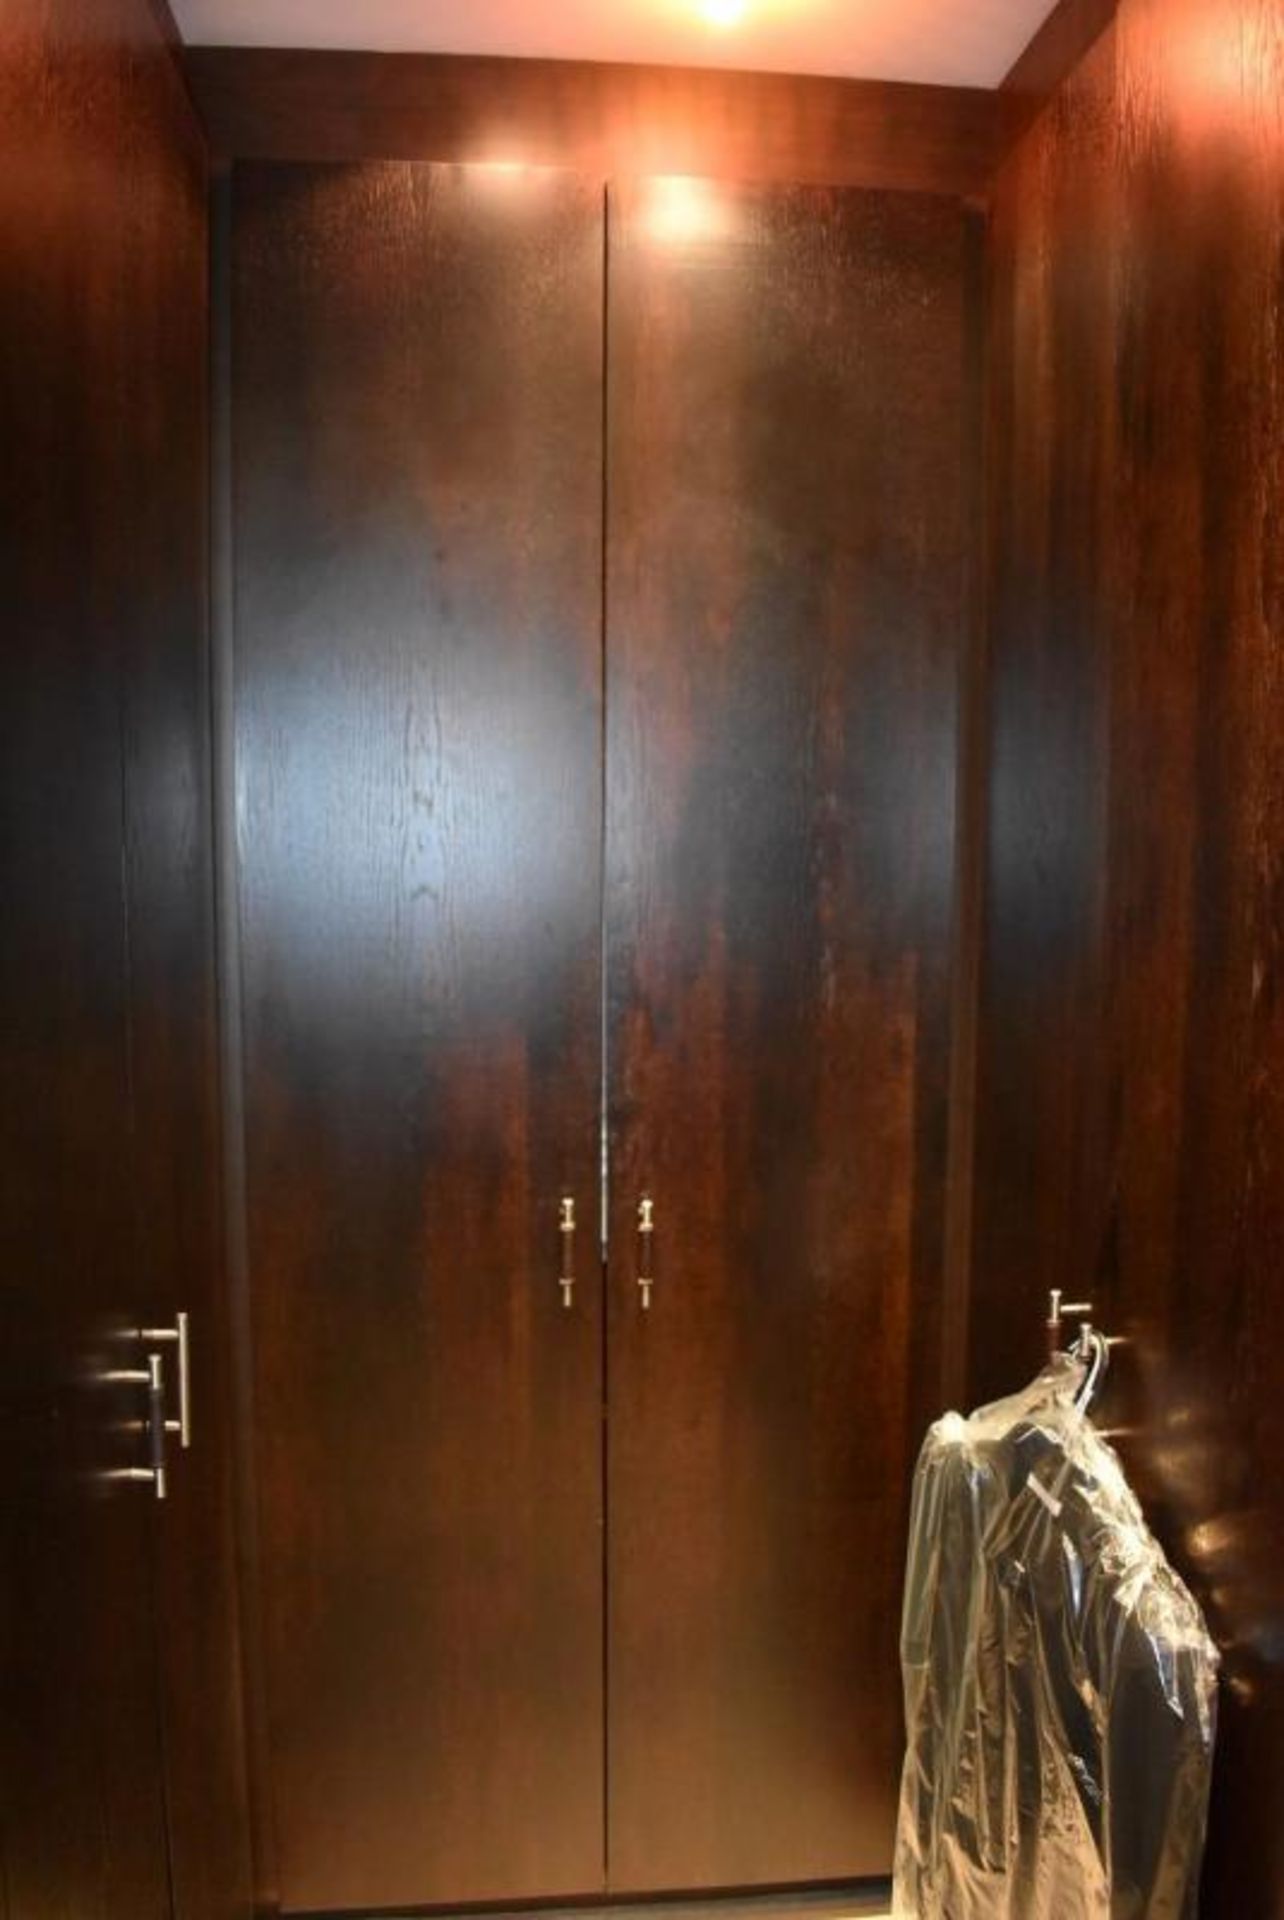 14-Door Walk-in Wardrobe Storage Installation With Dark Wood Veneer Doors - Compises Of 7 x Double D - Image 12 of 12